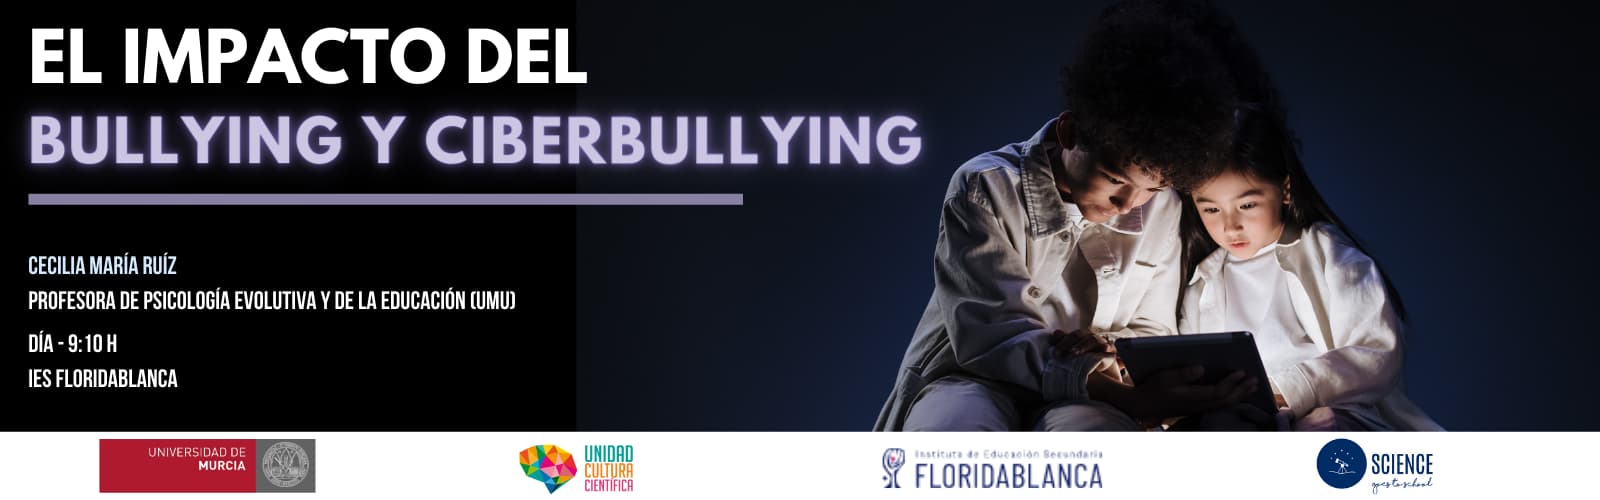 La UMU organiza una charla para concienciar a los adolescentes sobre el impacto emocional del bullying